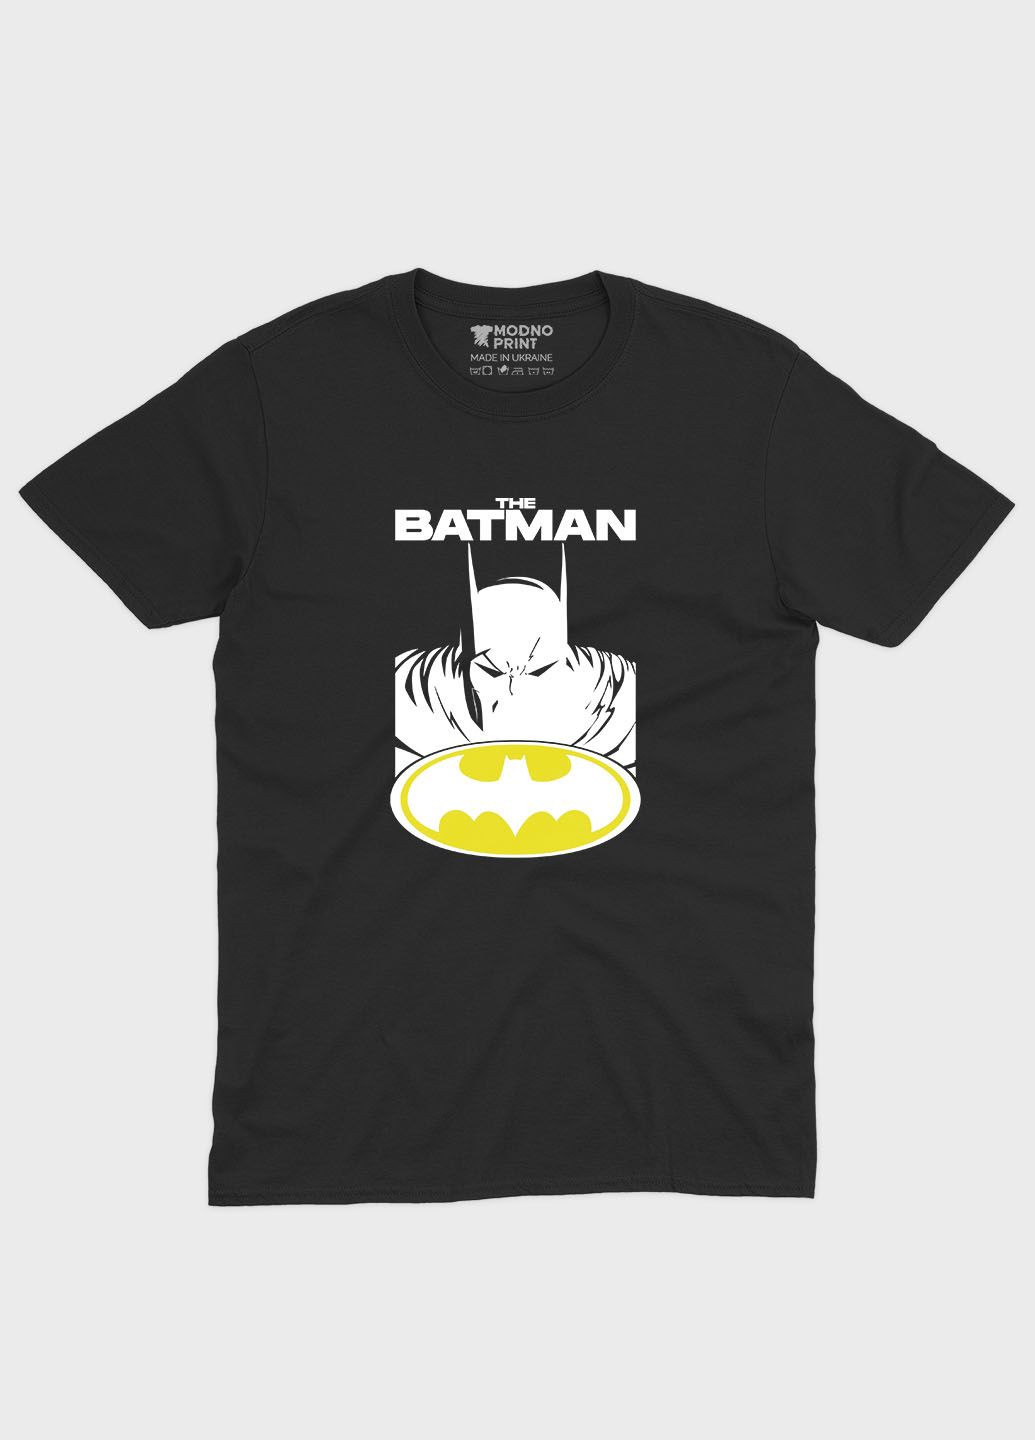 Черная мужская футболка с принтом супергероя - бэтмен (ts001-1-bl-006-003-019) Modno